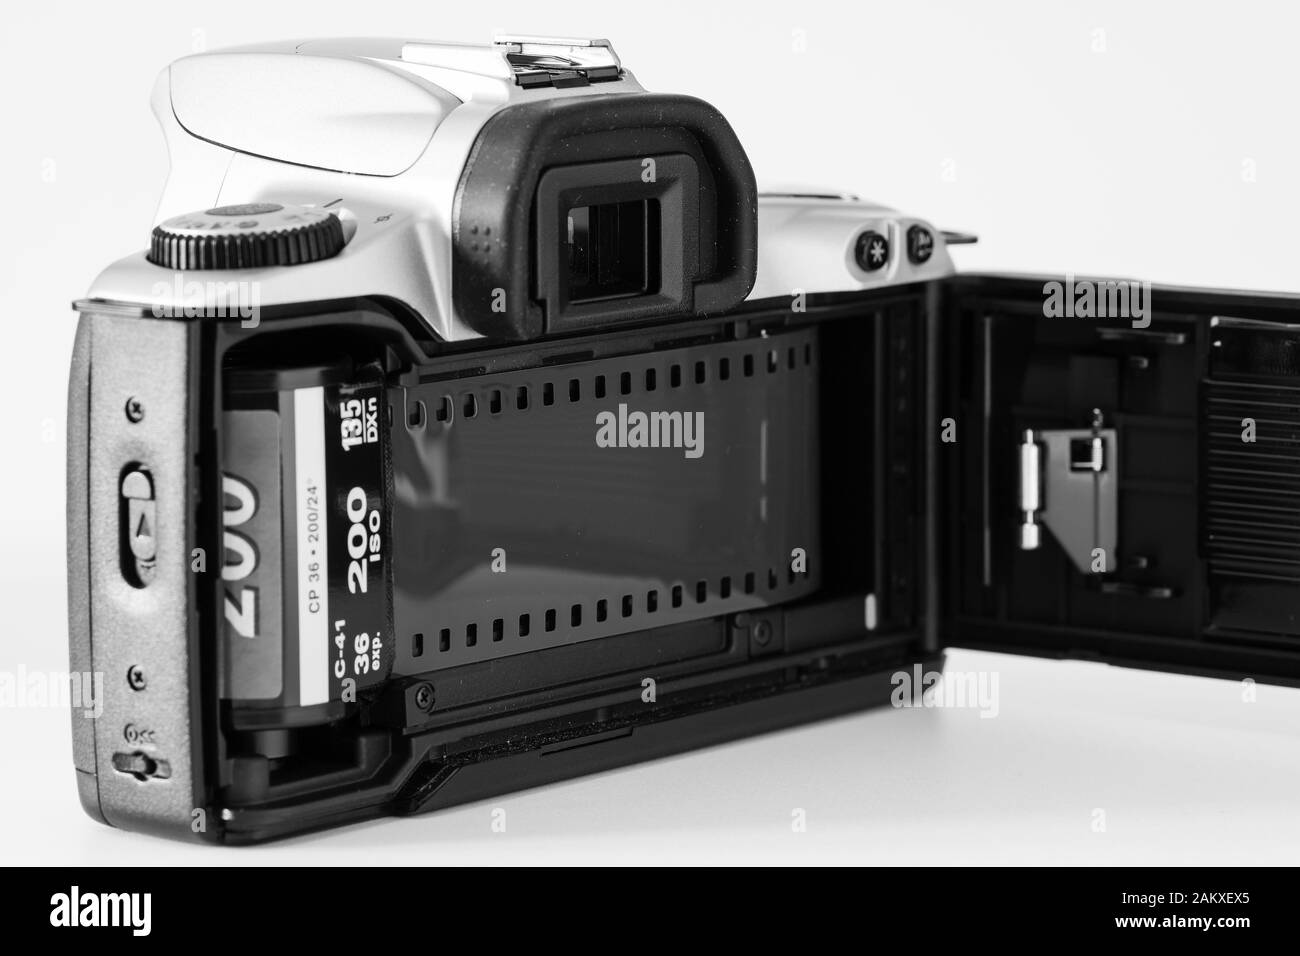 Arrière d'un appareil photo Canon Eos300 avec film inséré et compartiment ouvert, système analogique. Banque D'Images